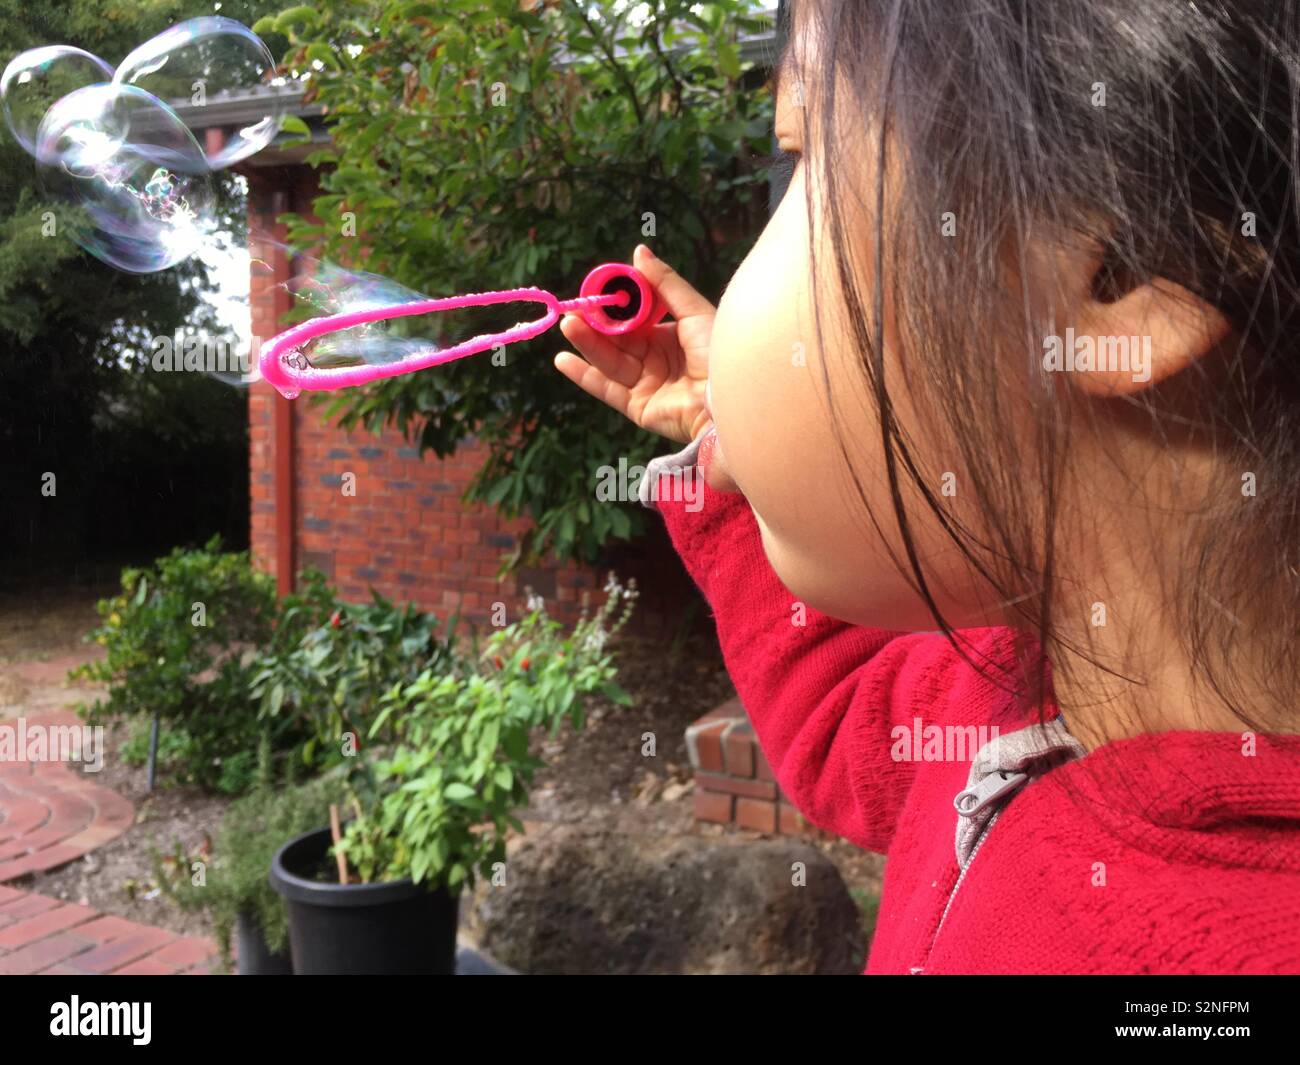 Une jeune fille portant un multi ethnic avec capuchon rouge n'est faire des bulles dans une arrière-cour. Saison d'automne. Banque D'Images